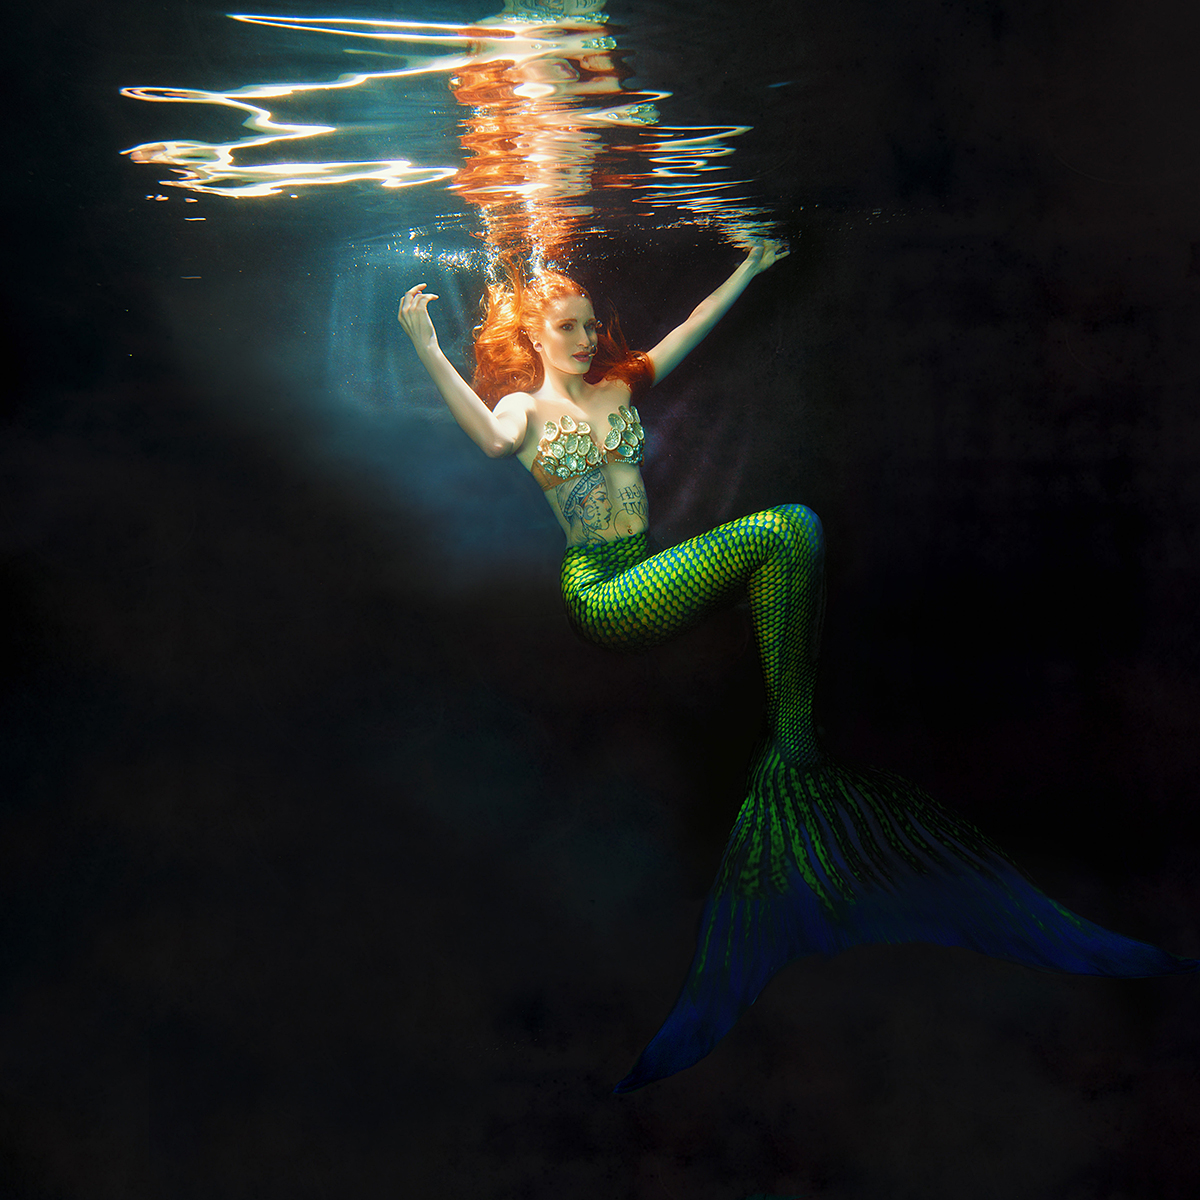 Arielle the Mermaid